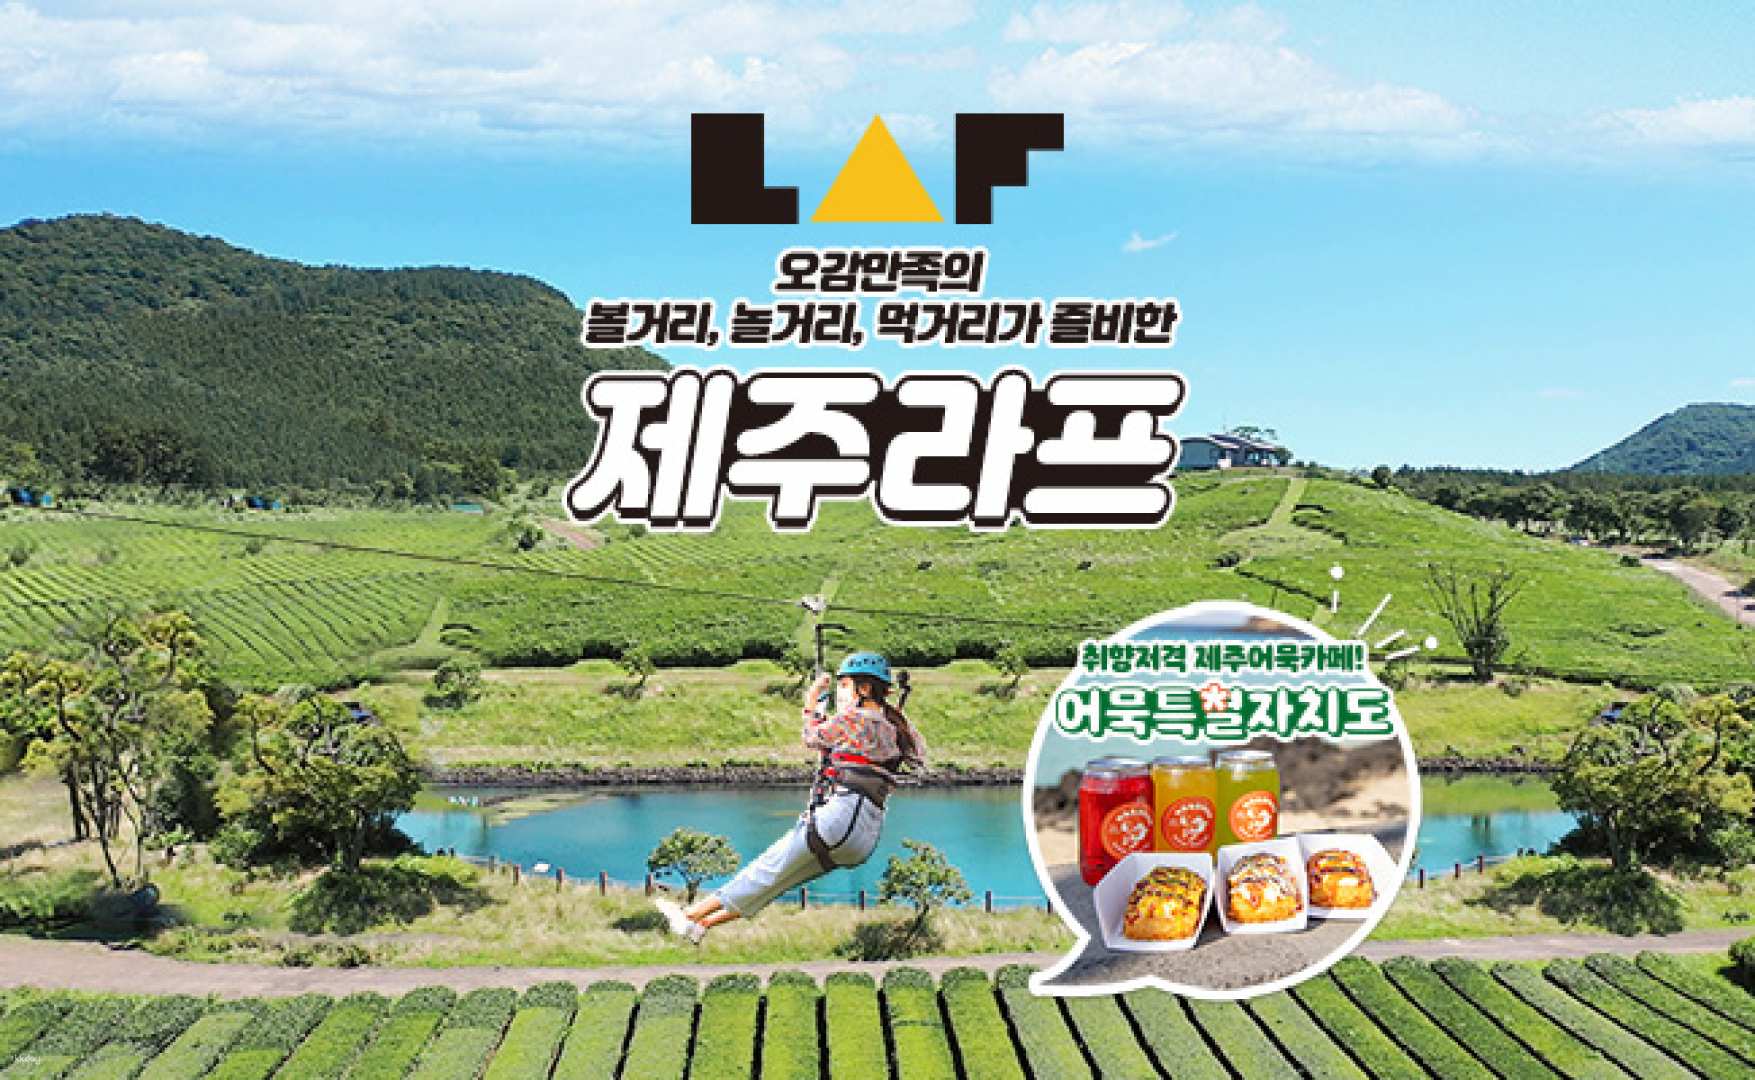 韓國-濟州 LAF 高空飛索&足浴體驗